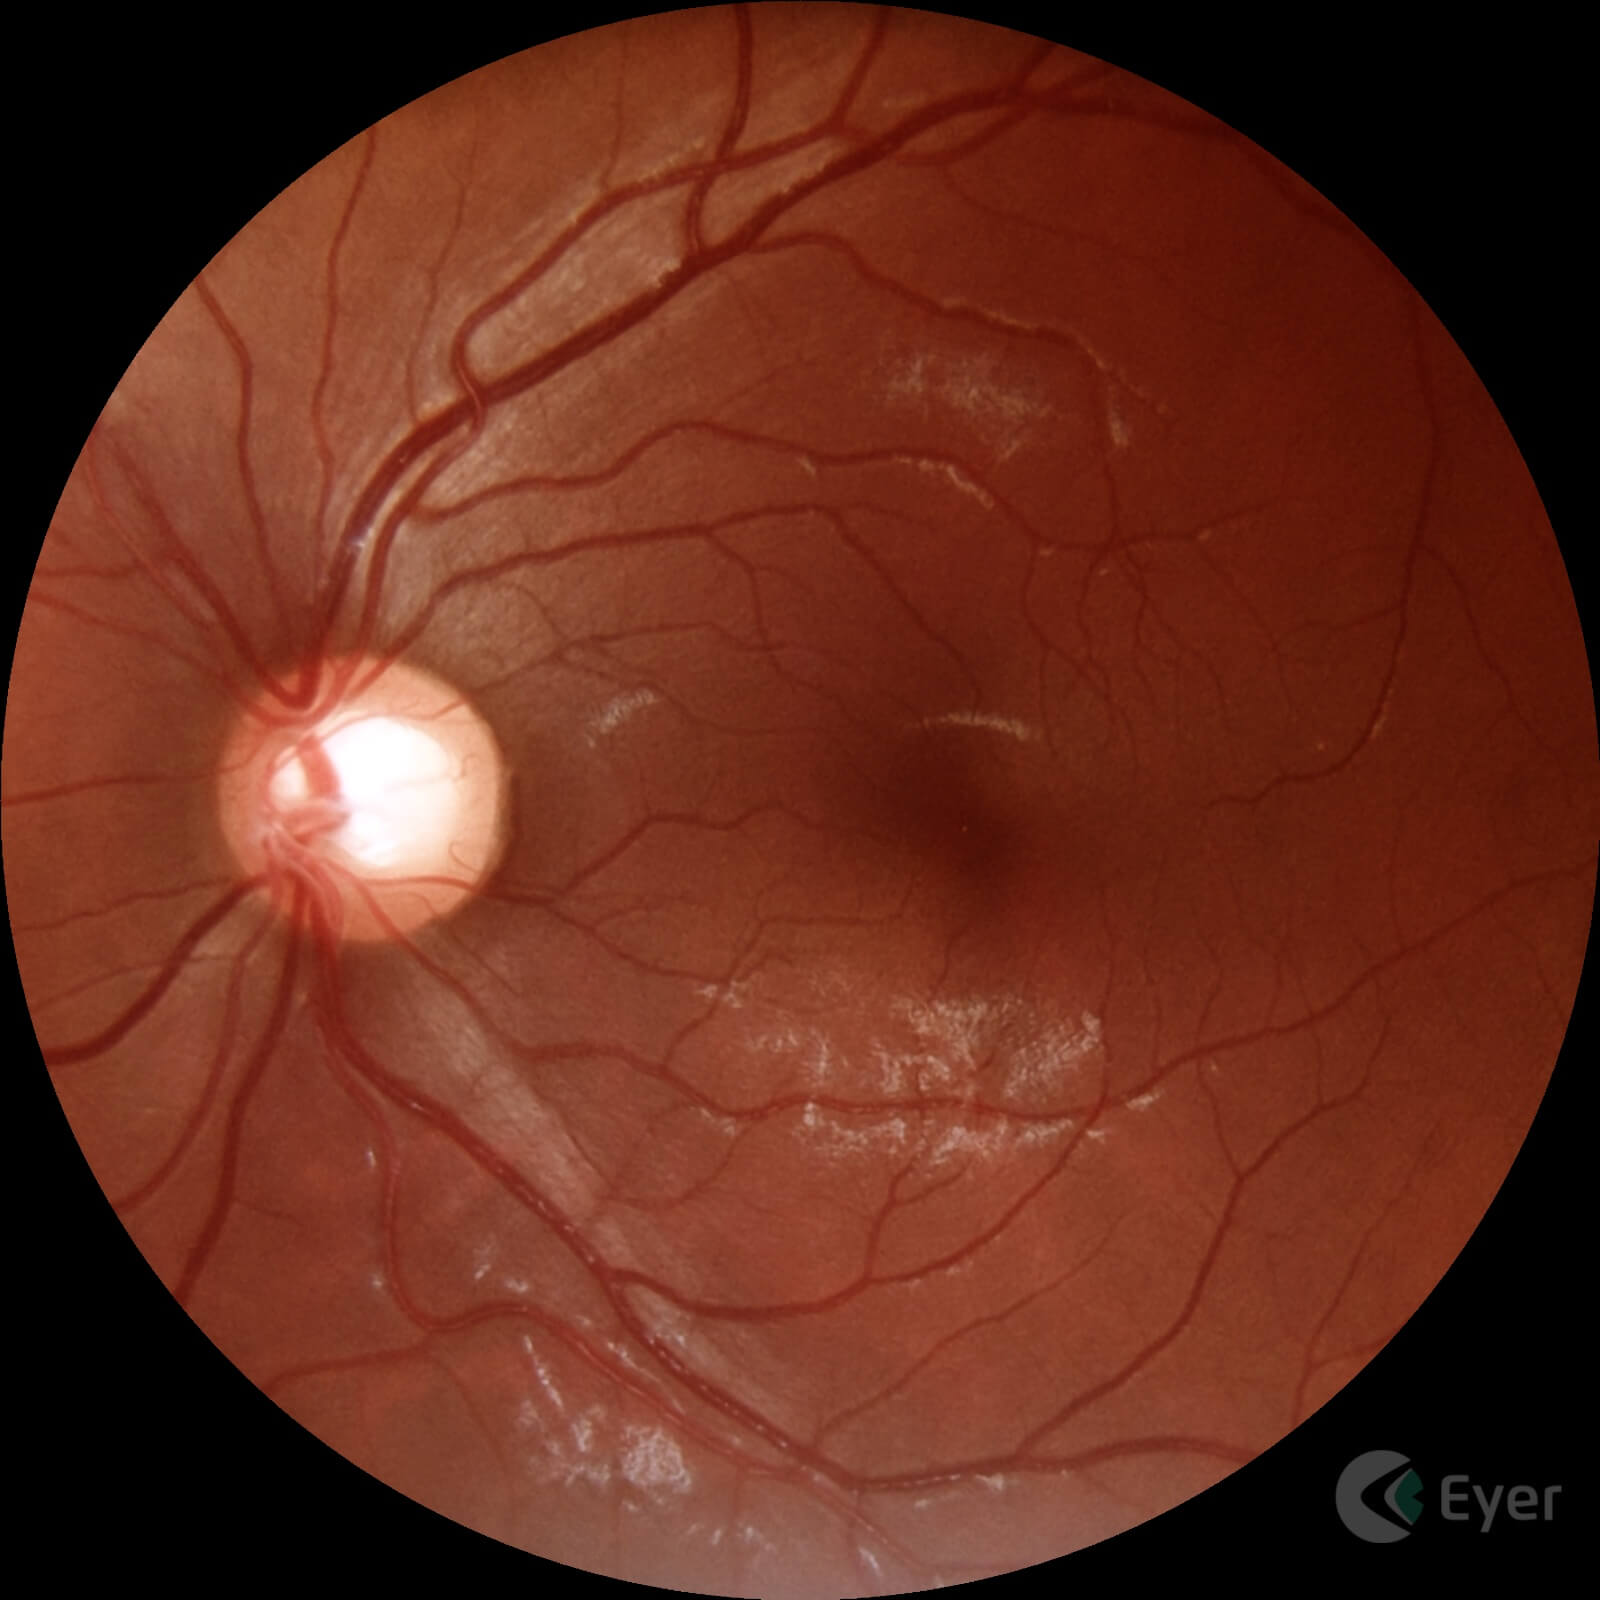 Imagem feito com o Eyer de paciente com glaucoma